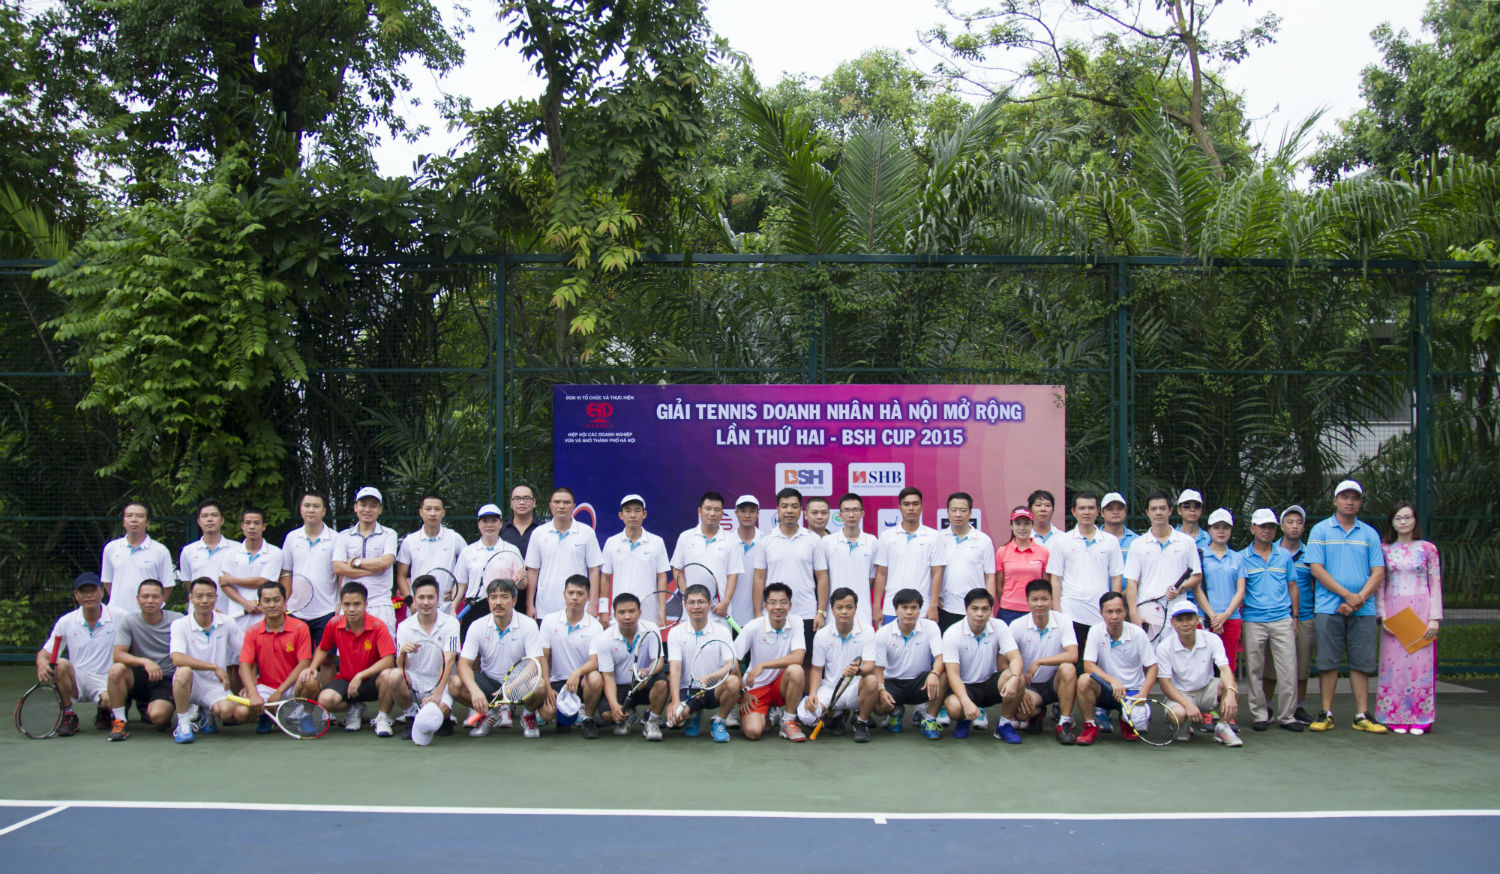 Thư mời tham dự giải tennis doanh nhân Hà Nội mở rộng lần ...